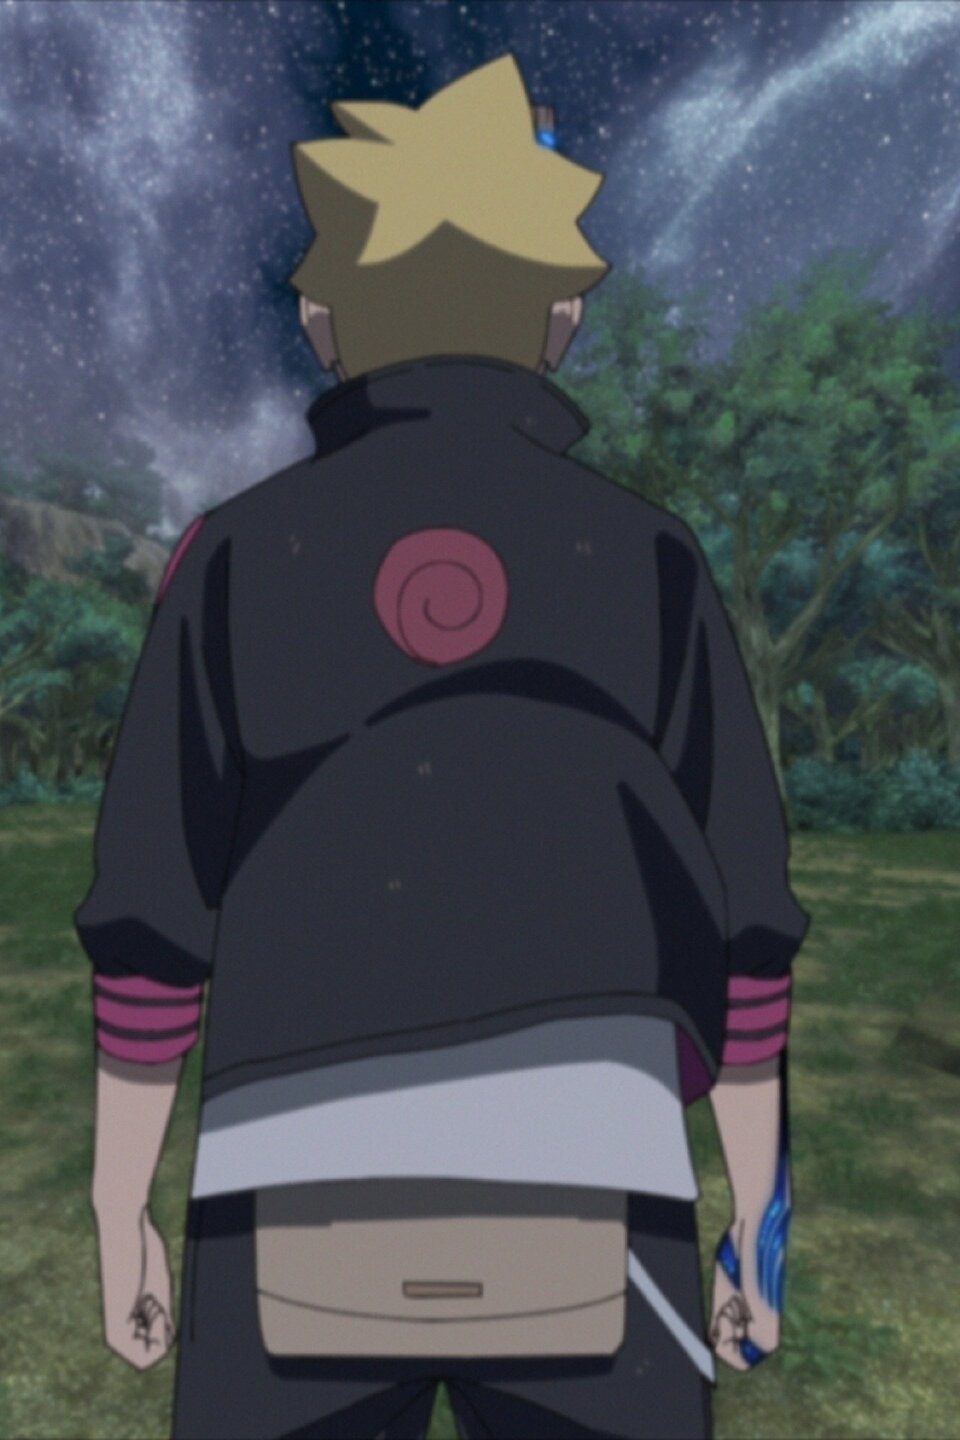 Boruto : Naruto Next Generations on X: Boruto Uzumaki in Ep 14